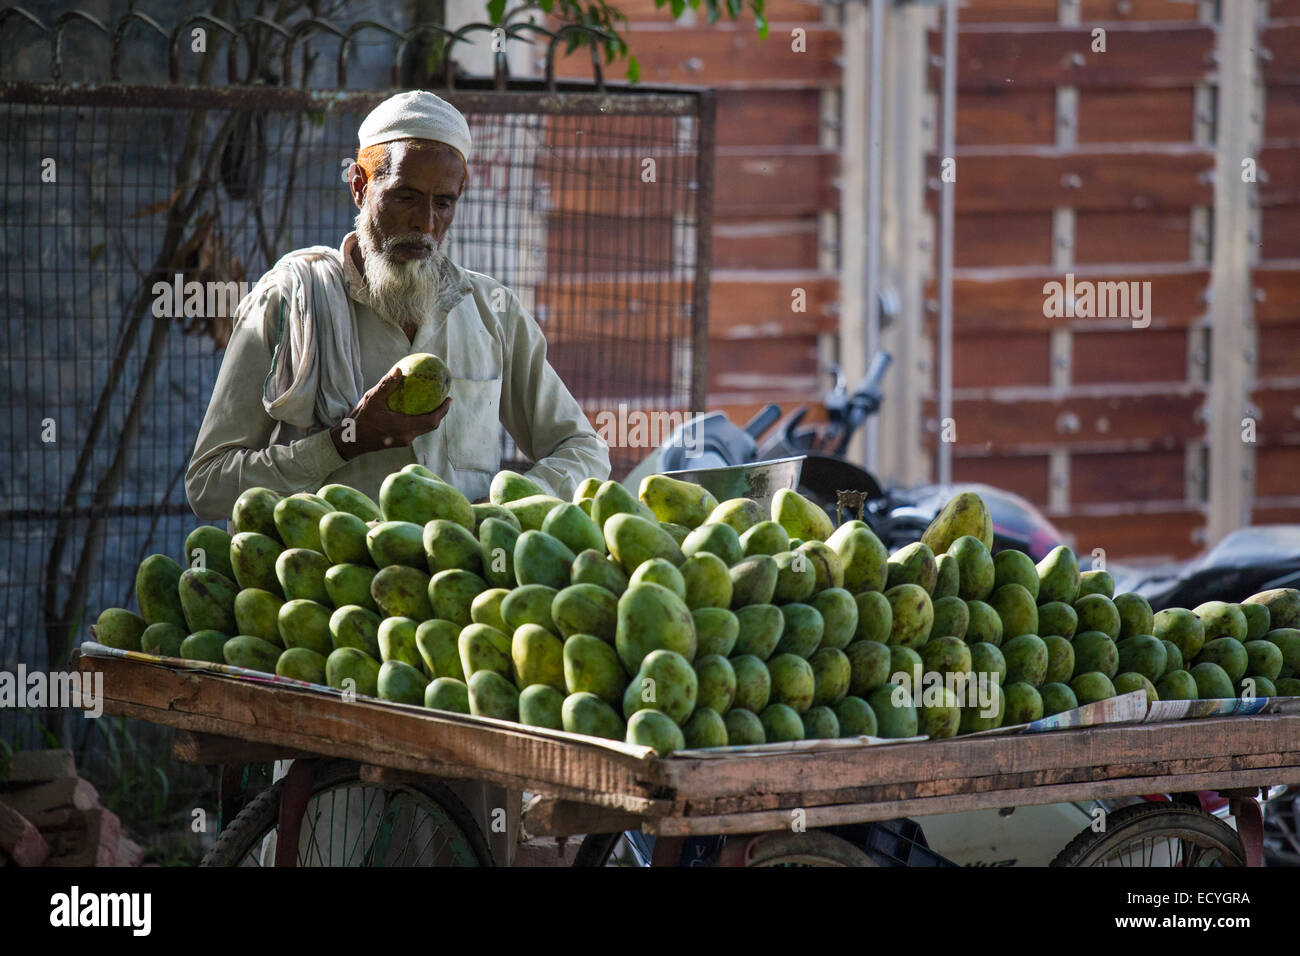 Muslim mango vendor in Delhi, India Stock Photo